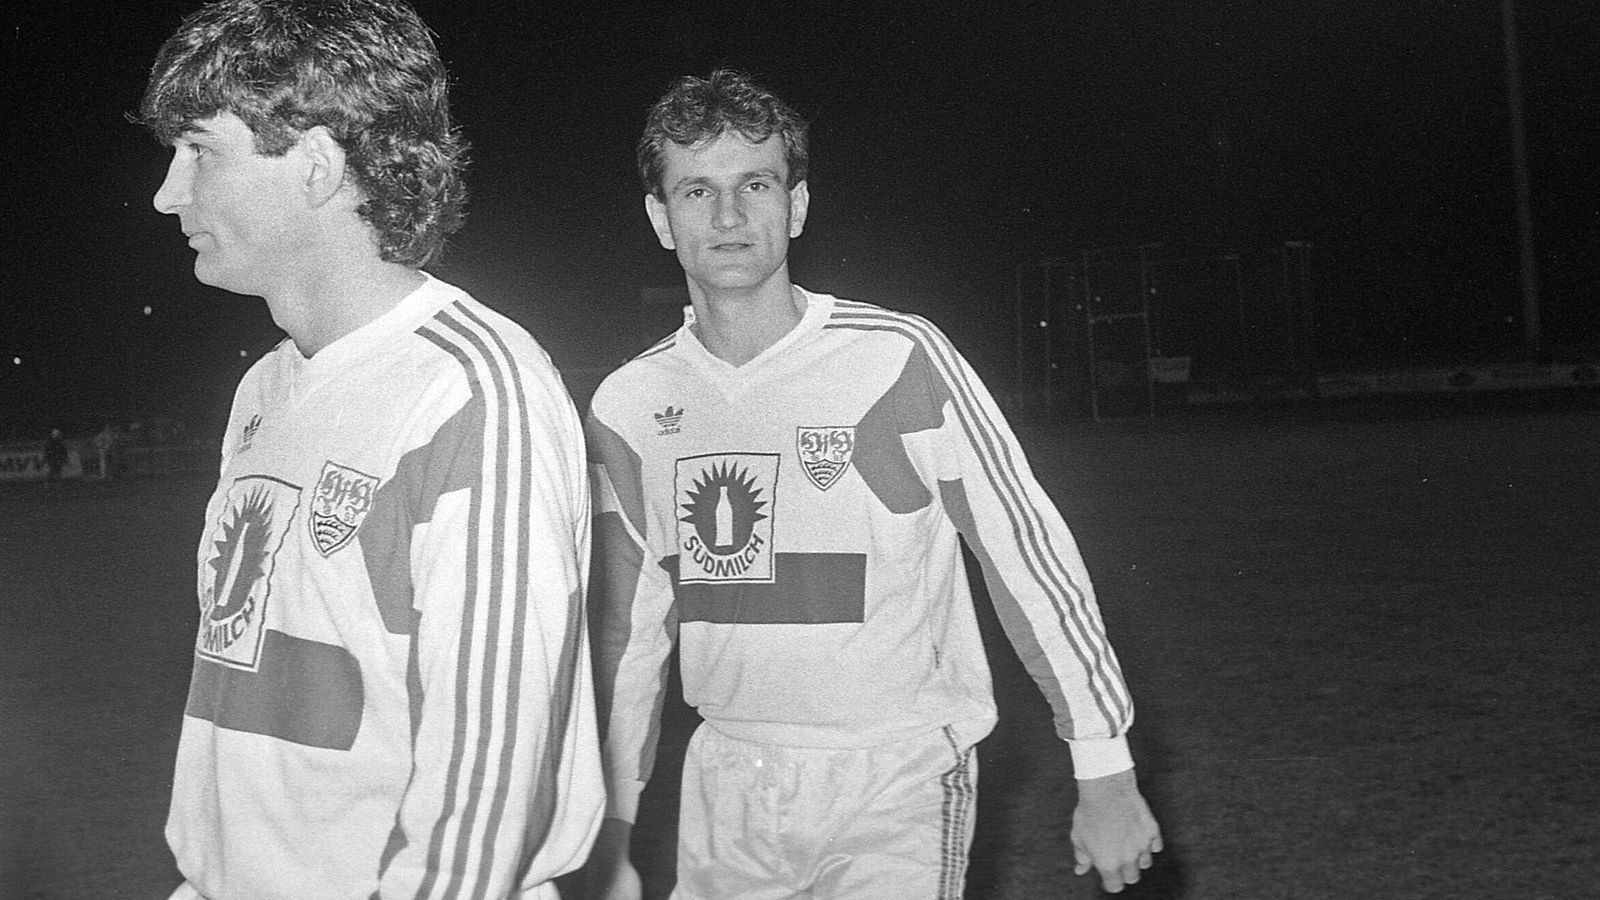 
                <strong>VfB Stuttgart (1992)</strong><br>
                Besonders teuer war der Wechselpatzer von Christoph Daum als Trainer des VfB Stuttgart. In der Qualifikation zur Champions League gegen Leeds United schickte er in dem Serben Jovica Simanic (re.) einen vierten Ausländer auf den Rasen - einer mehr als erlaubt.
              